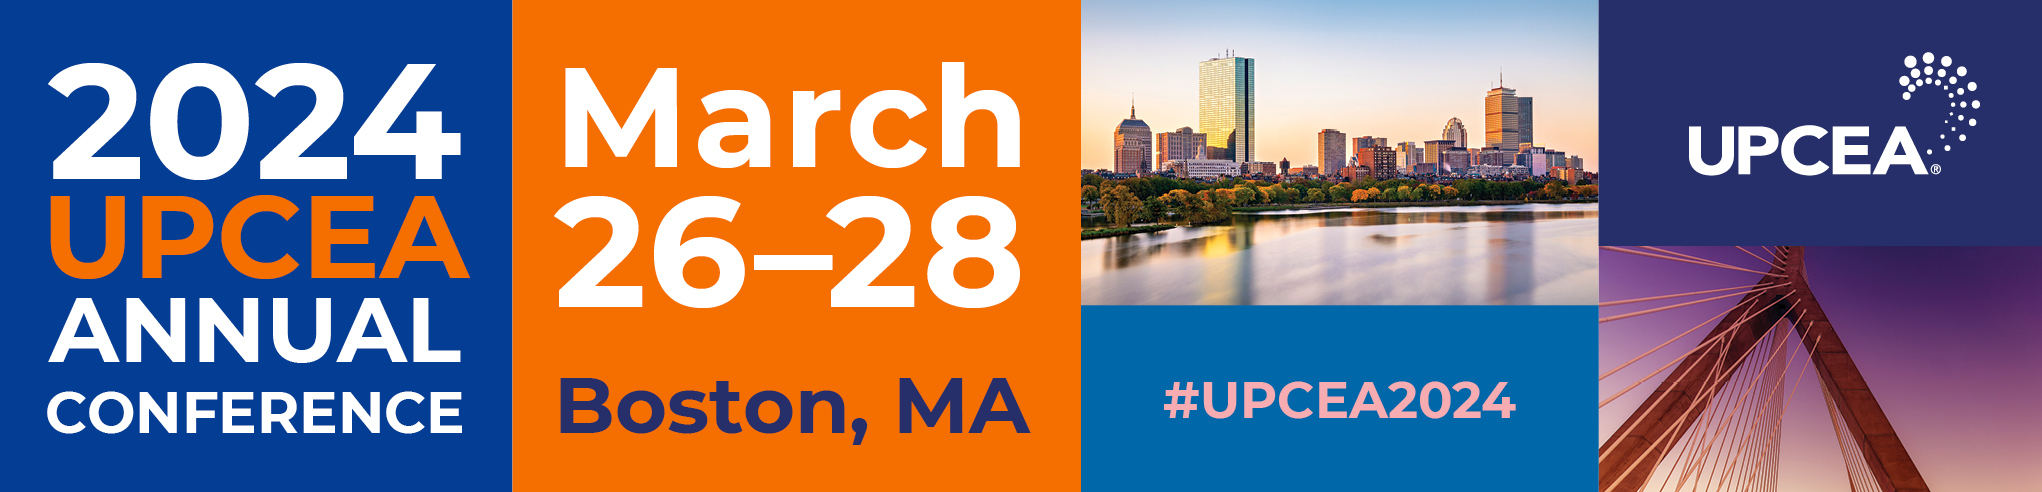 UPCEA 2024 Annual Conference | March 26-28, 2024 | Boston, MA